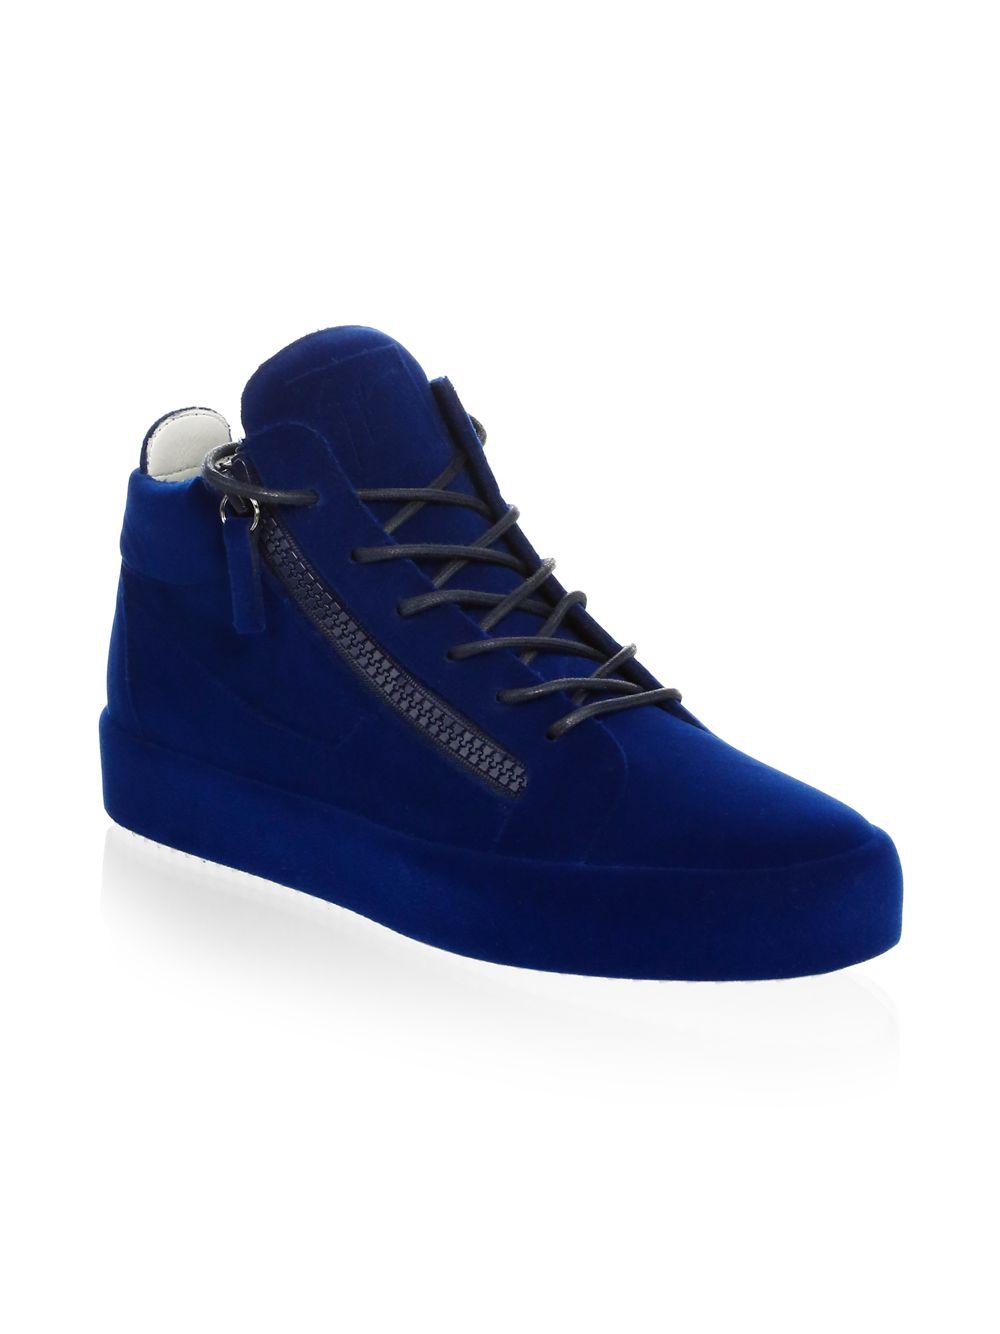 Giuseppe Zanotti Velvet Spray Sneakers Blue for Men - Lyst